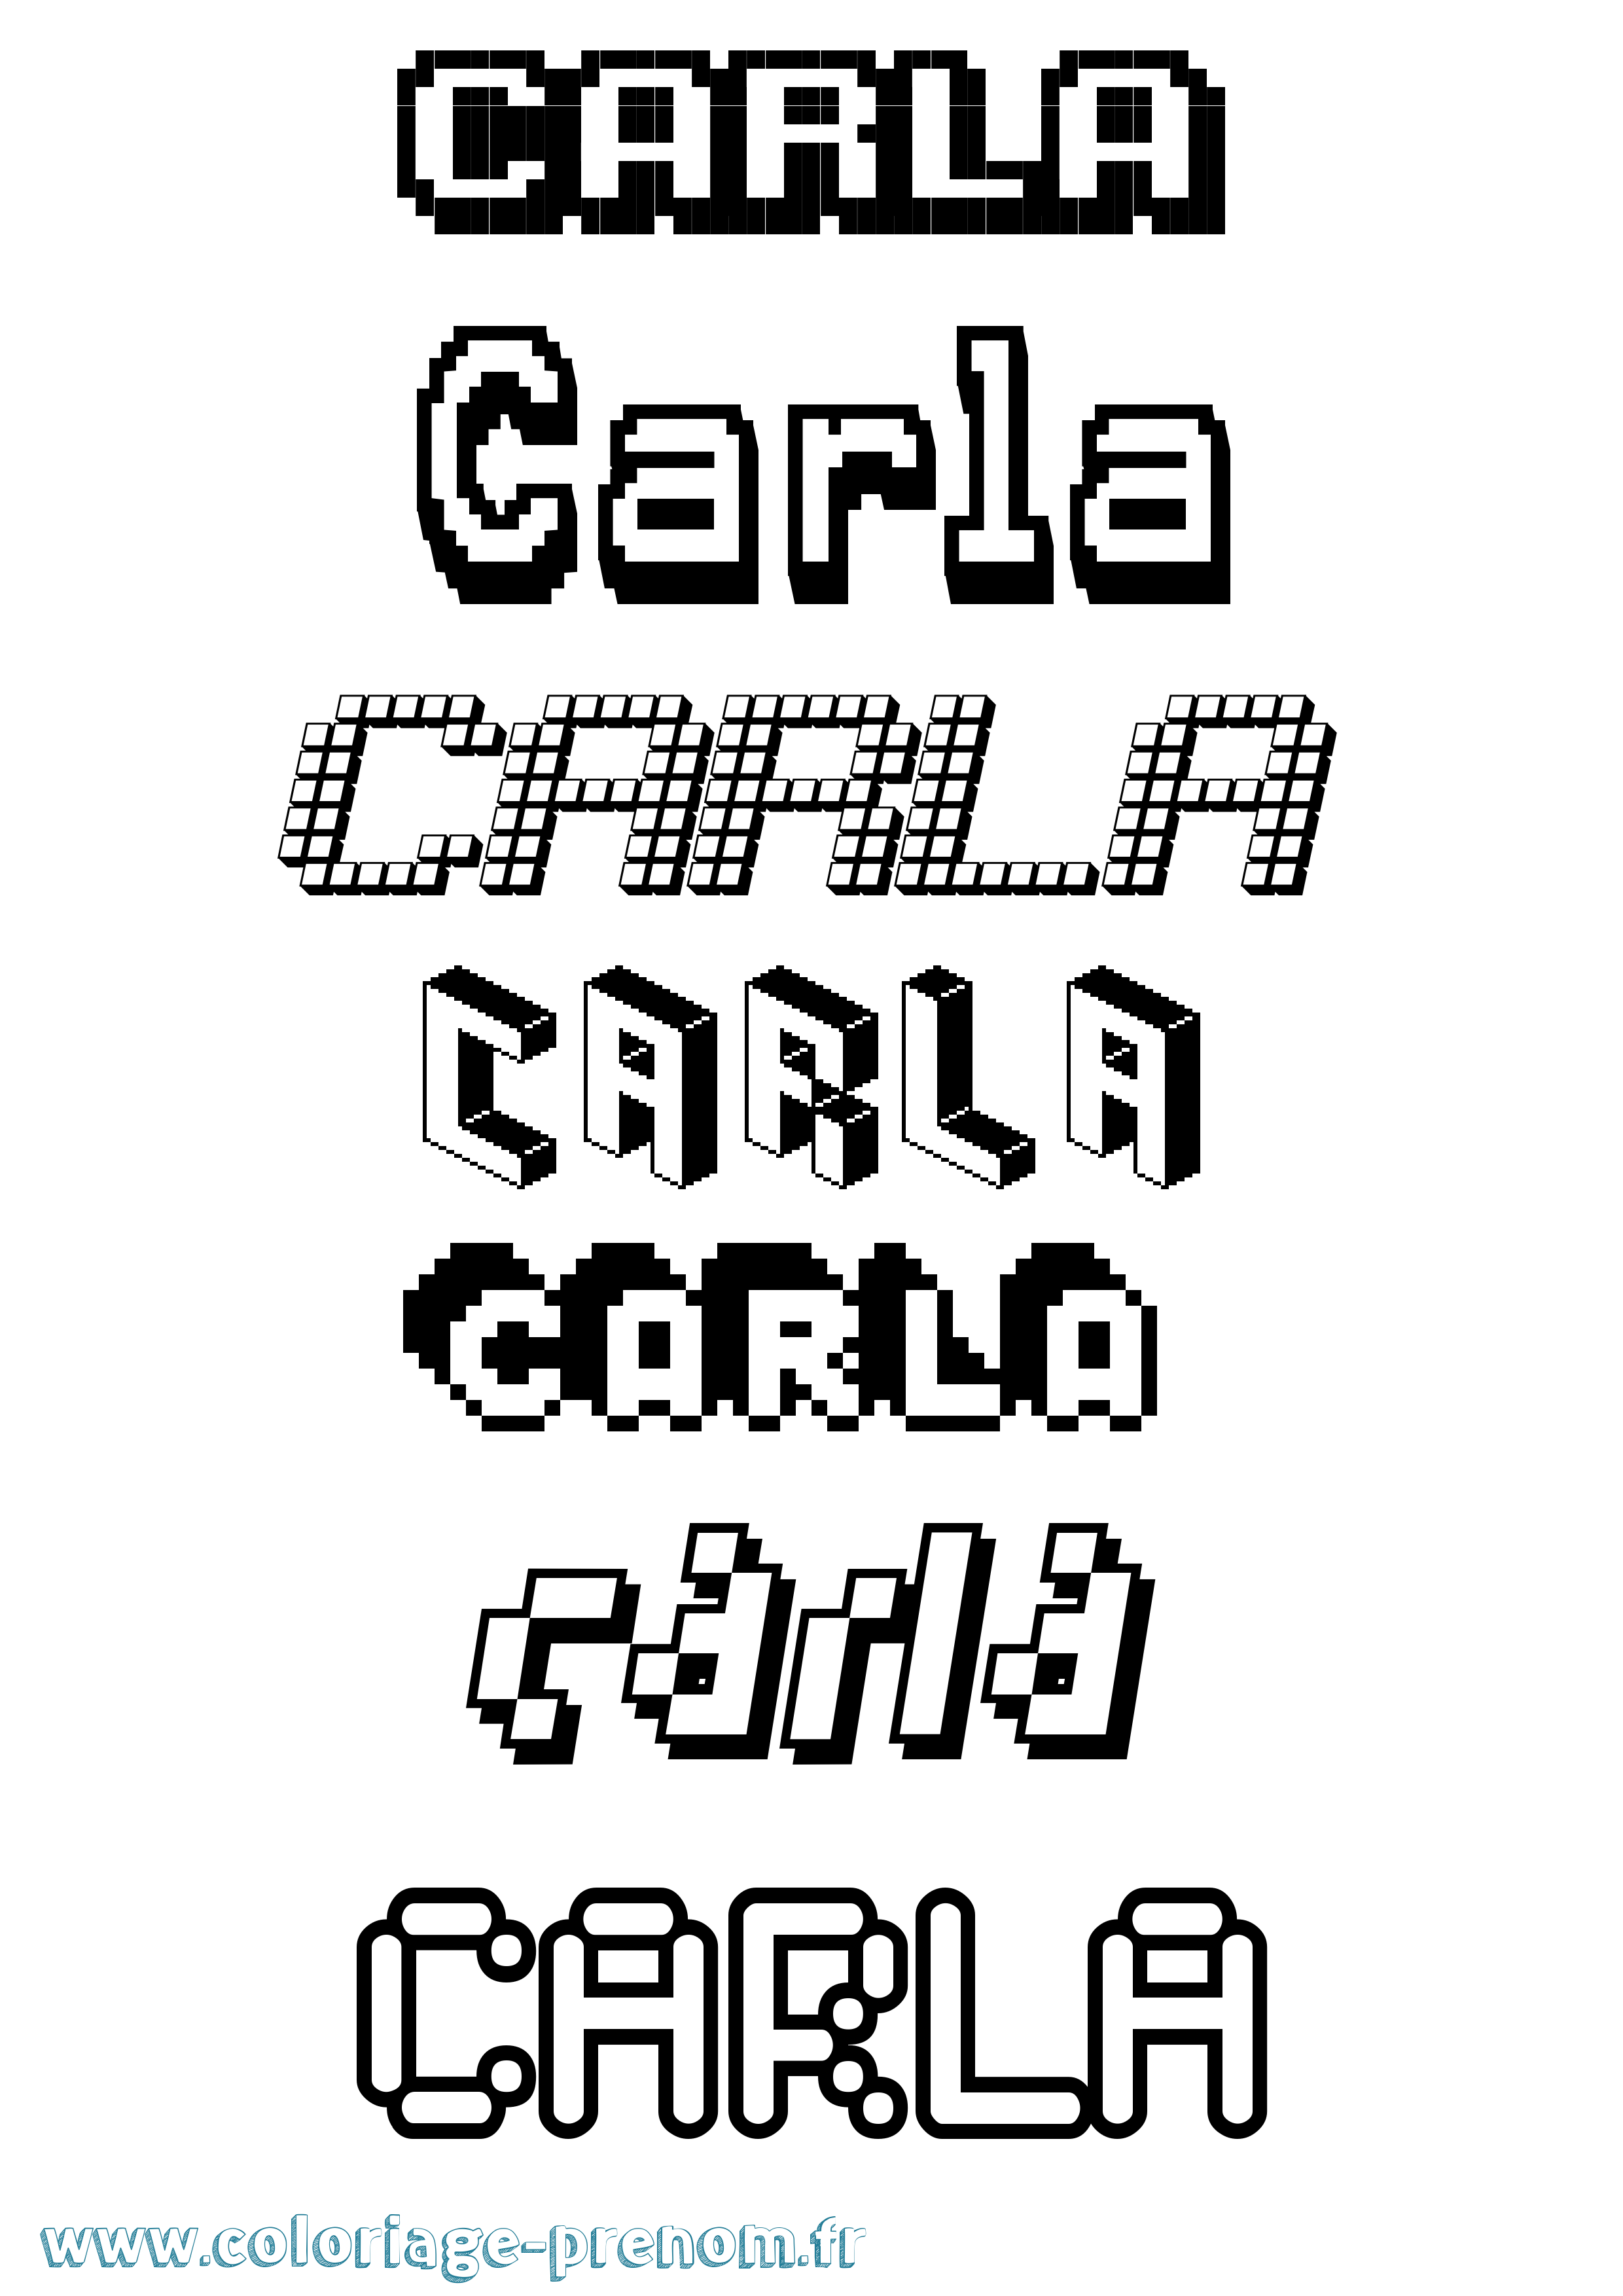 Coloriage prénom Carla Pixel